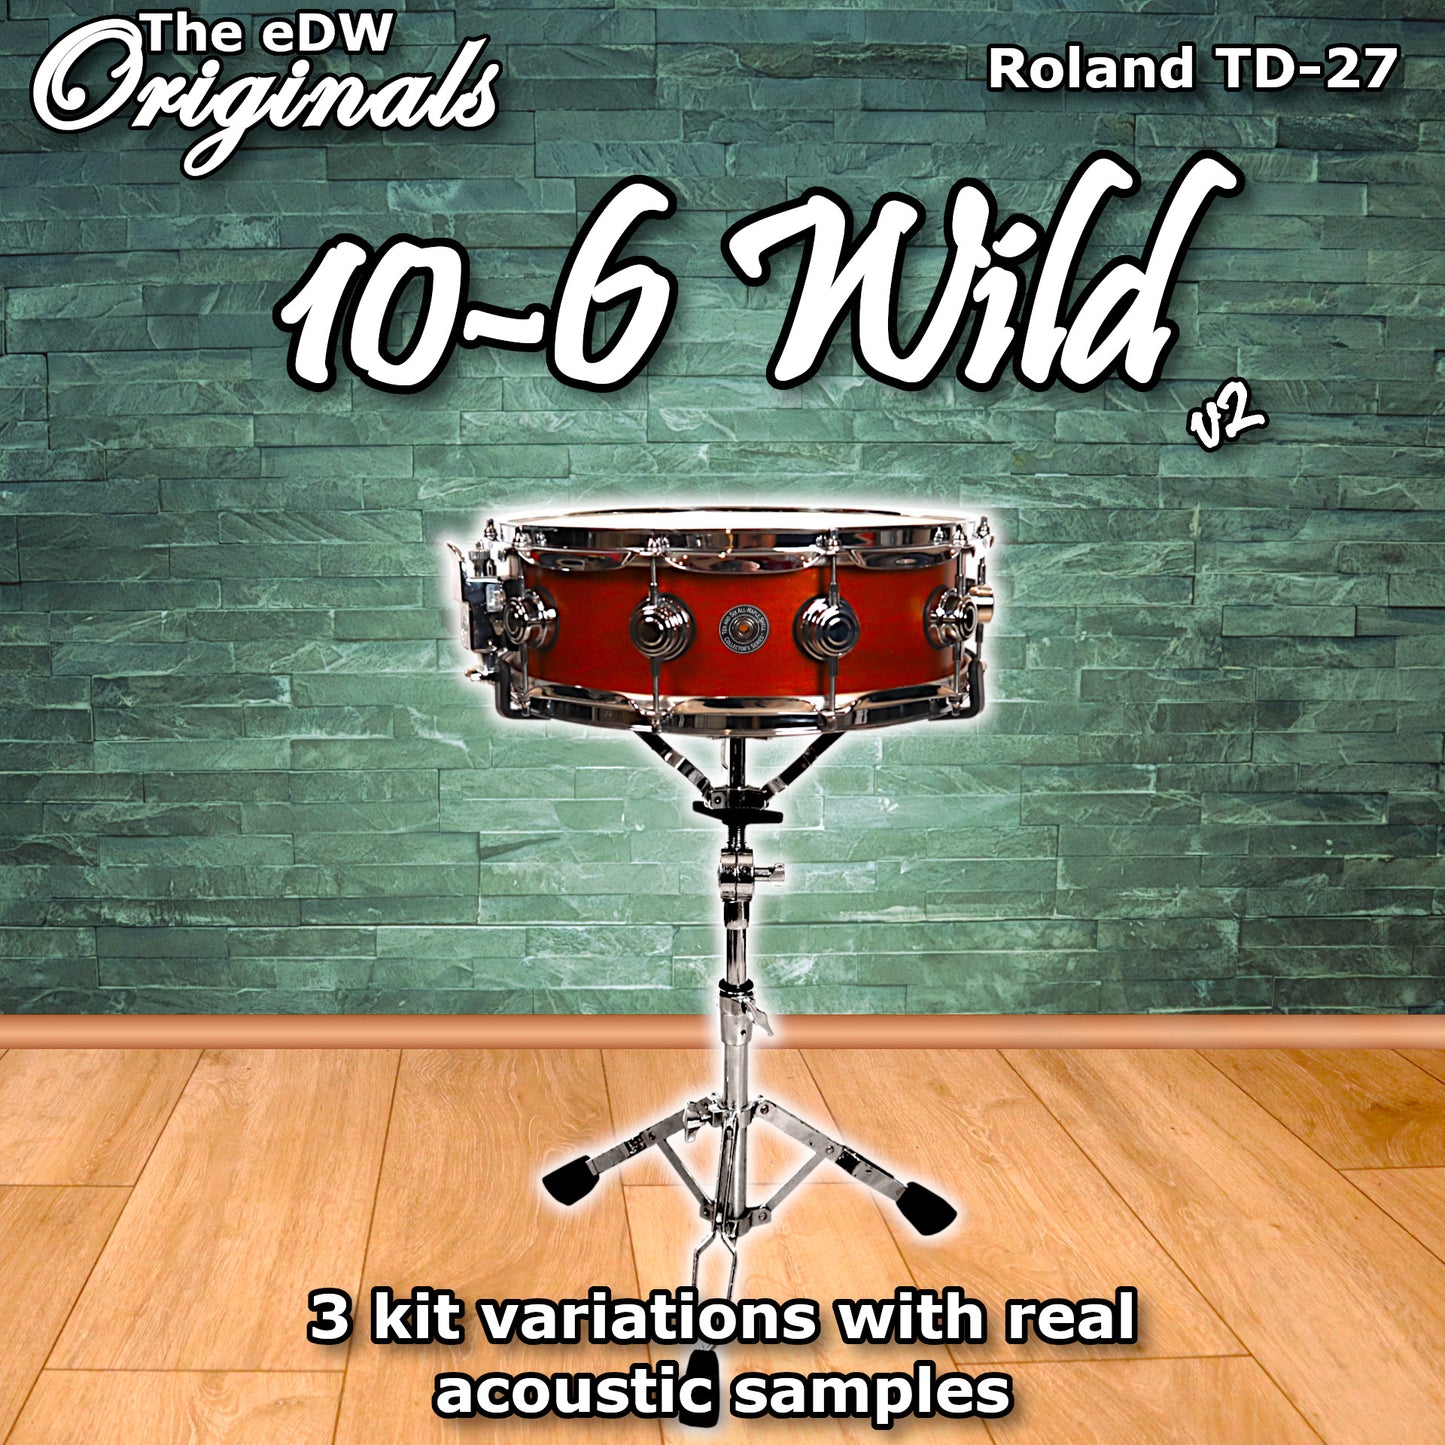 10-6 Wild | Roland TD-27